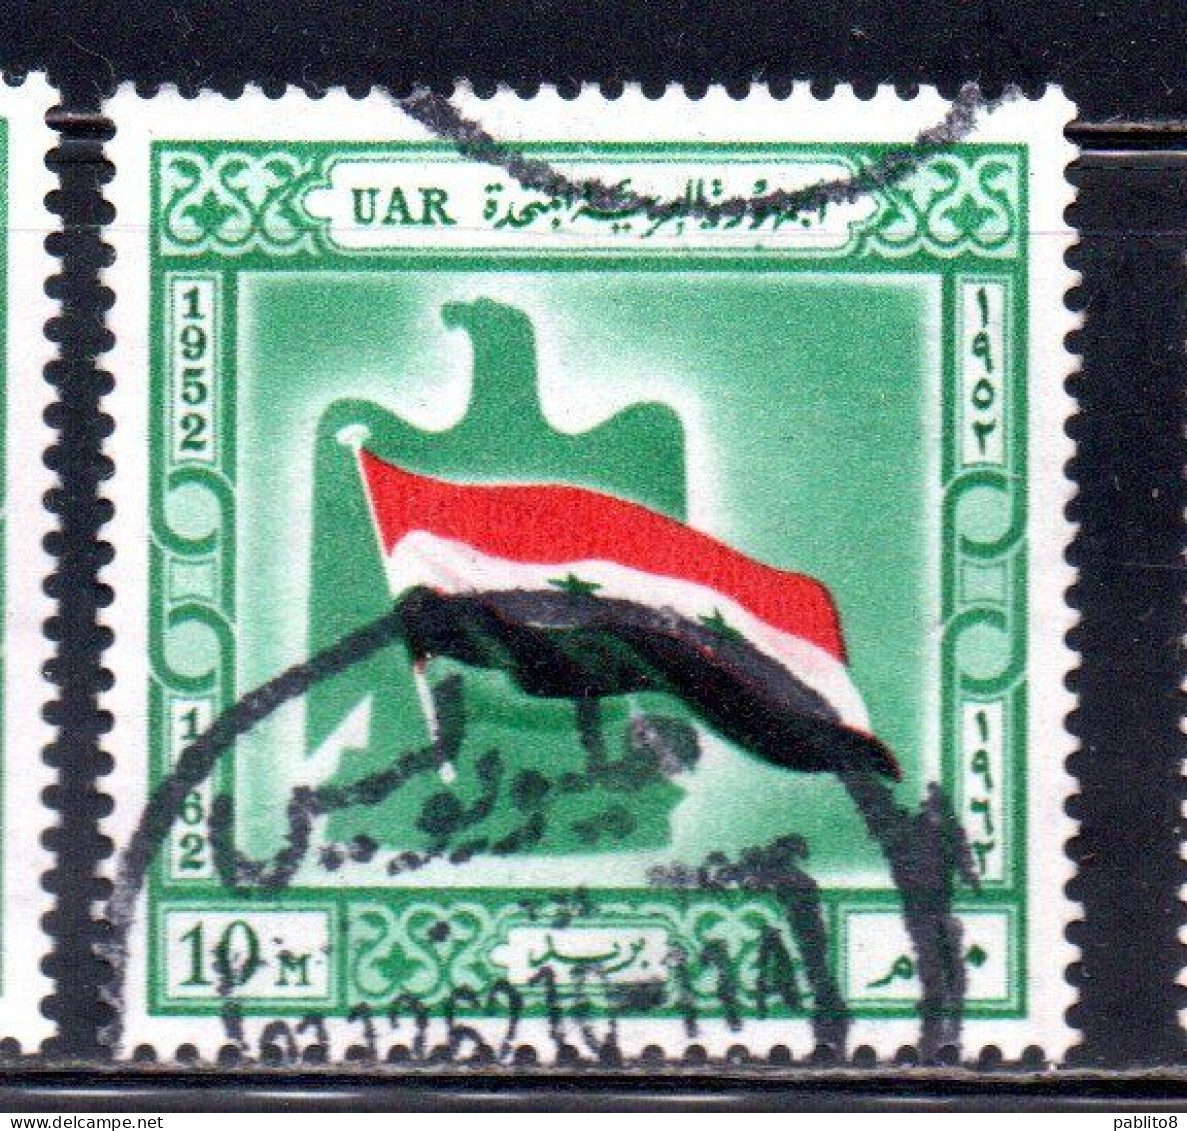 UAR EGYPT EGITTO 1962 BIRTH OF UAR FLAG AND EAGLE 10m USED USATO OBLITERE' - Gebraucht